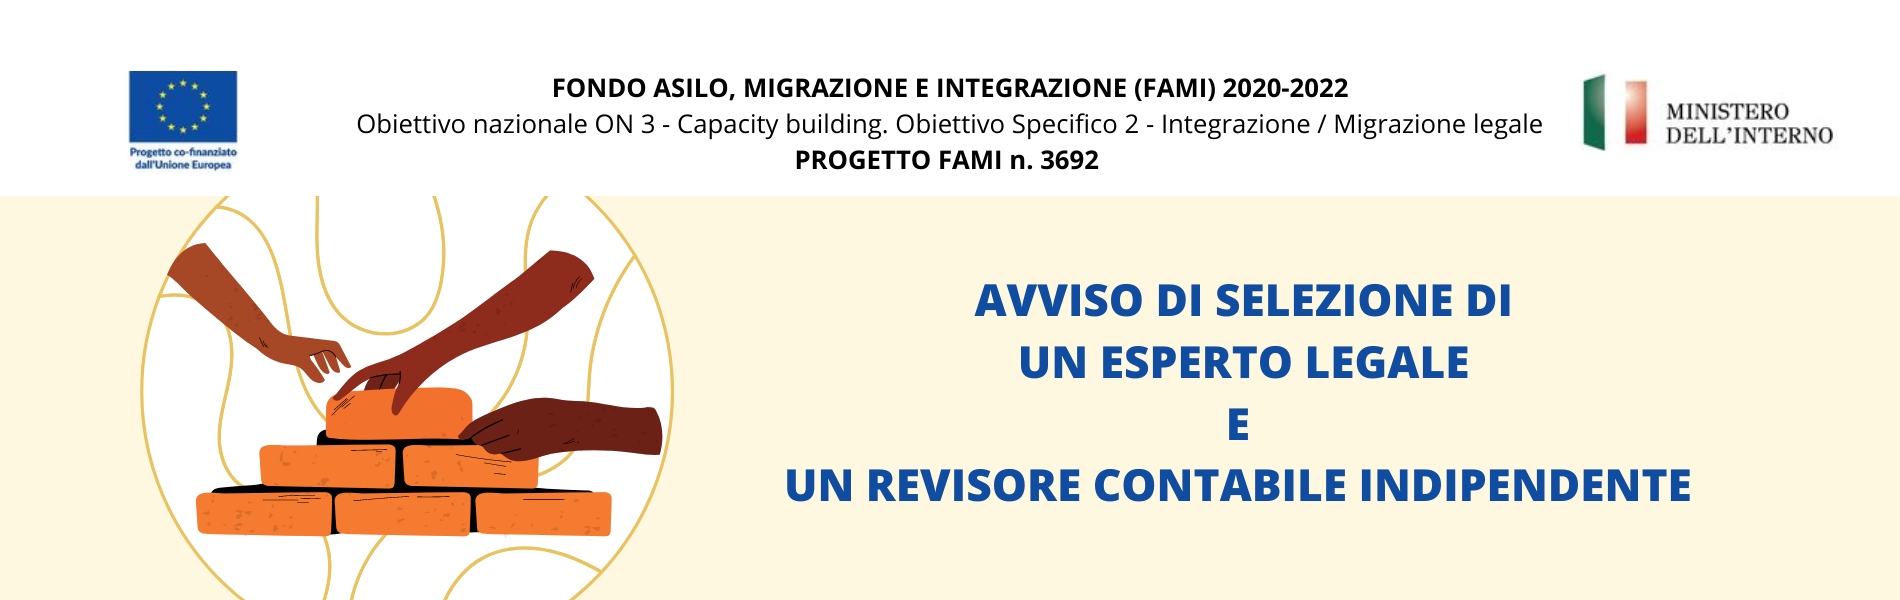 FONDO ASILO, MIGRAZIONE E INTEGRAZIONE (FAMI) 2020 2022 Obiettivo Specifico 2 Integrazione Migrazione Legale – Obiettivo Nazionale ON 3 – Capacity Building